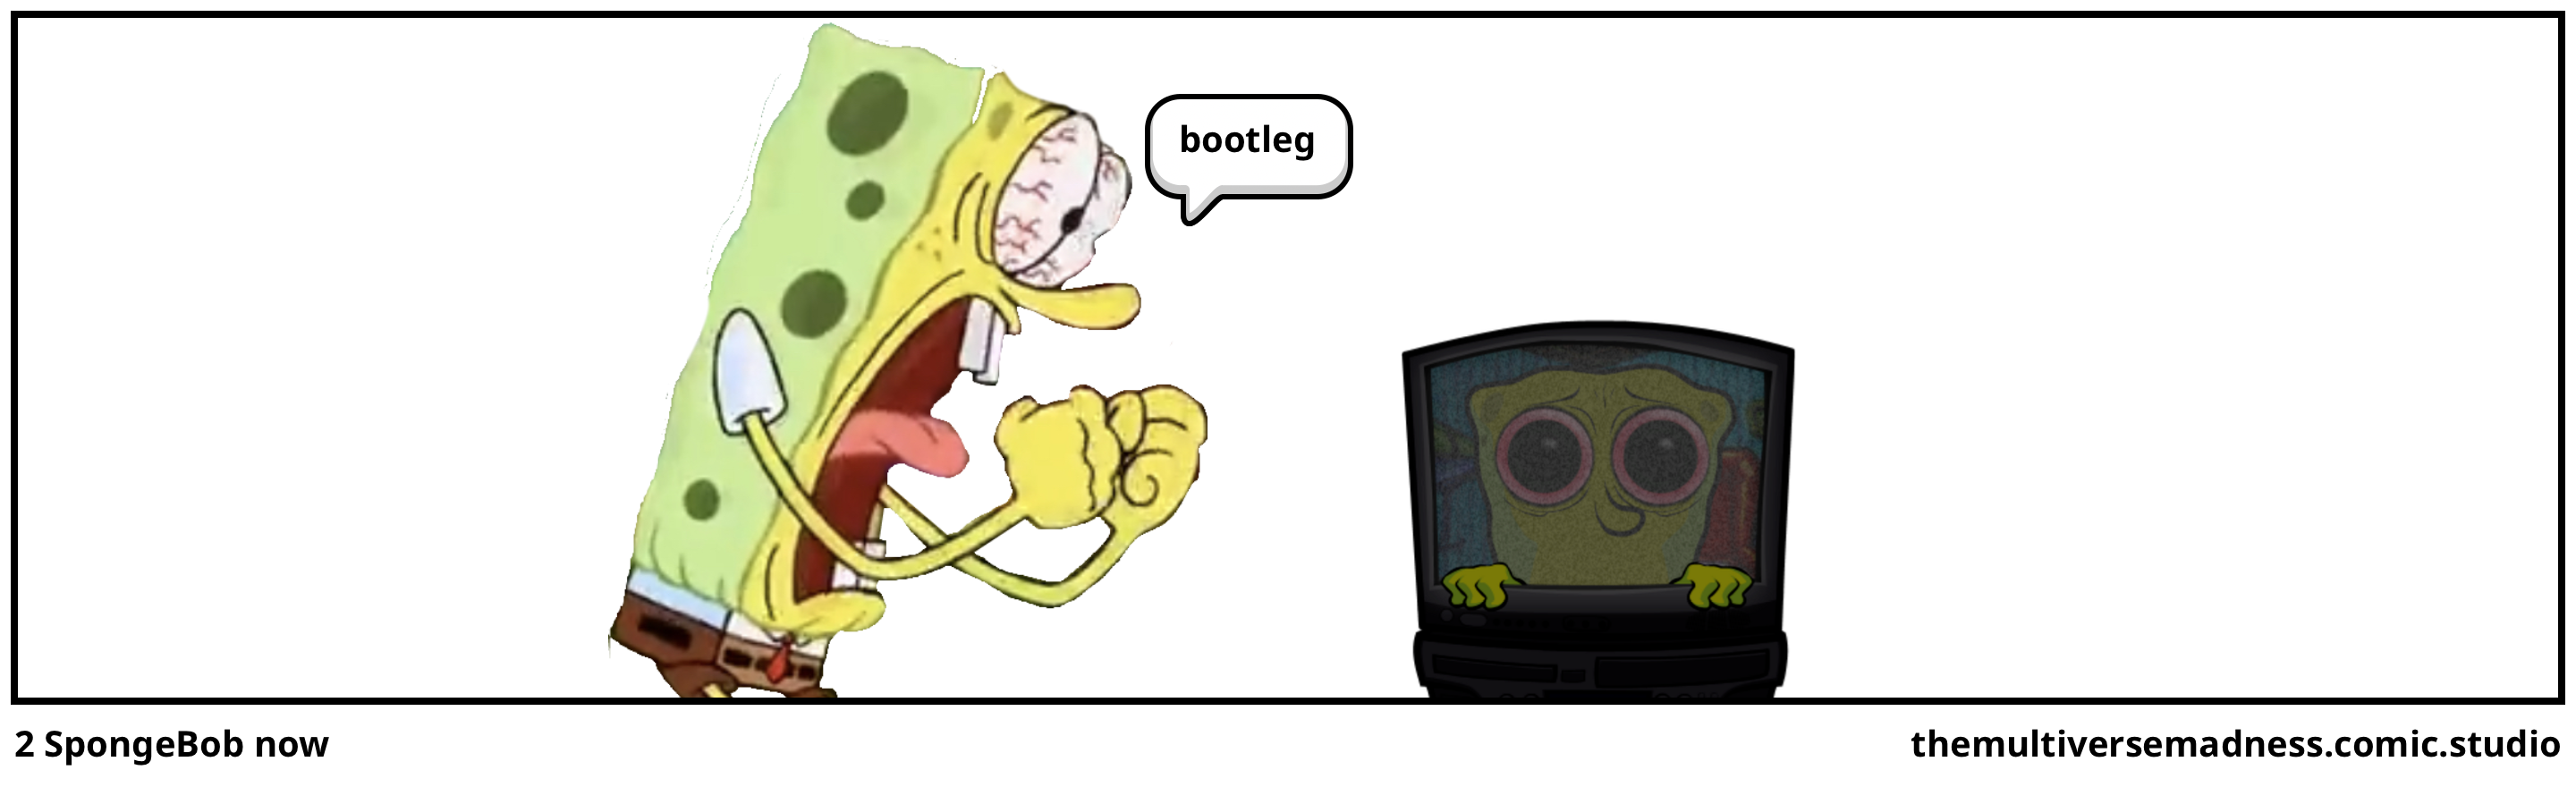 2 SpongeBob now